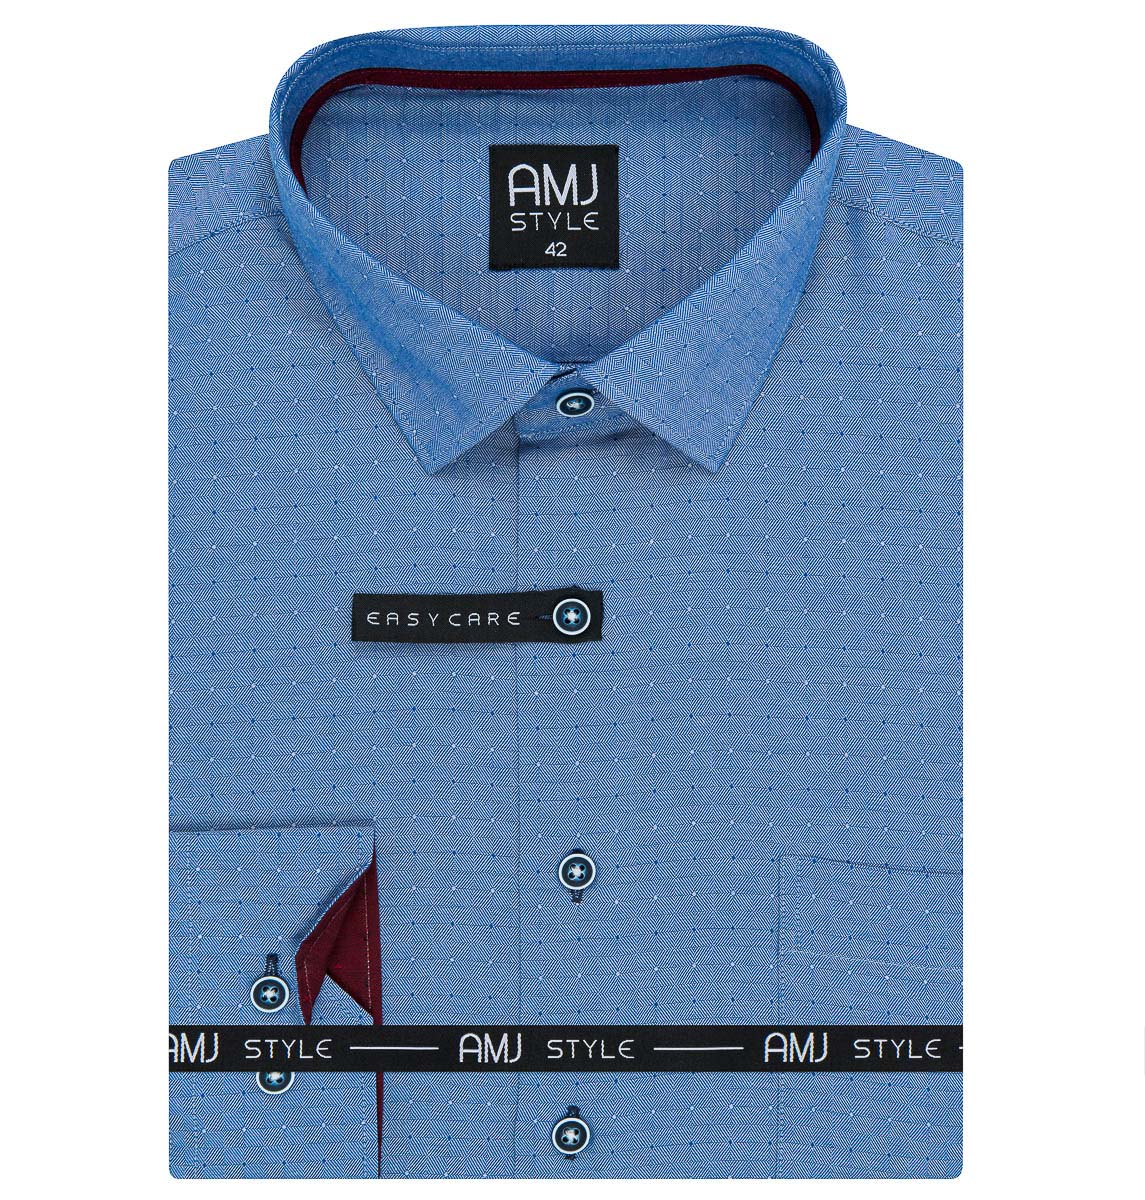 Pánská košile AMJ, modrá puntíkovaná VDR1176, dlouhý rukáv (regular + slim-fit)